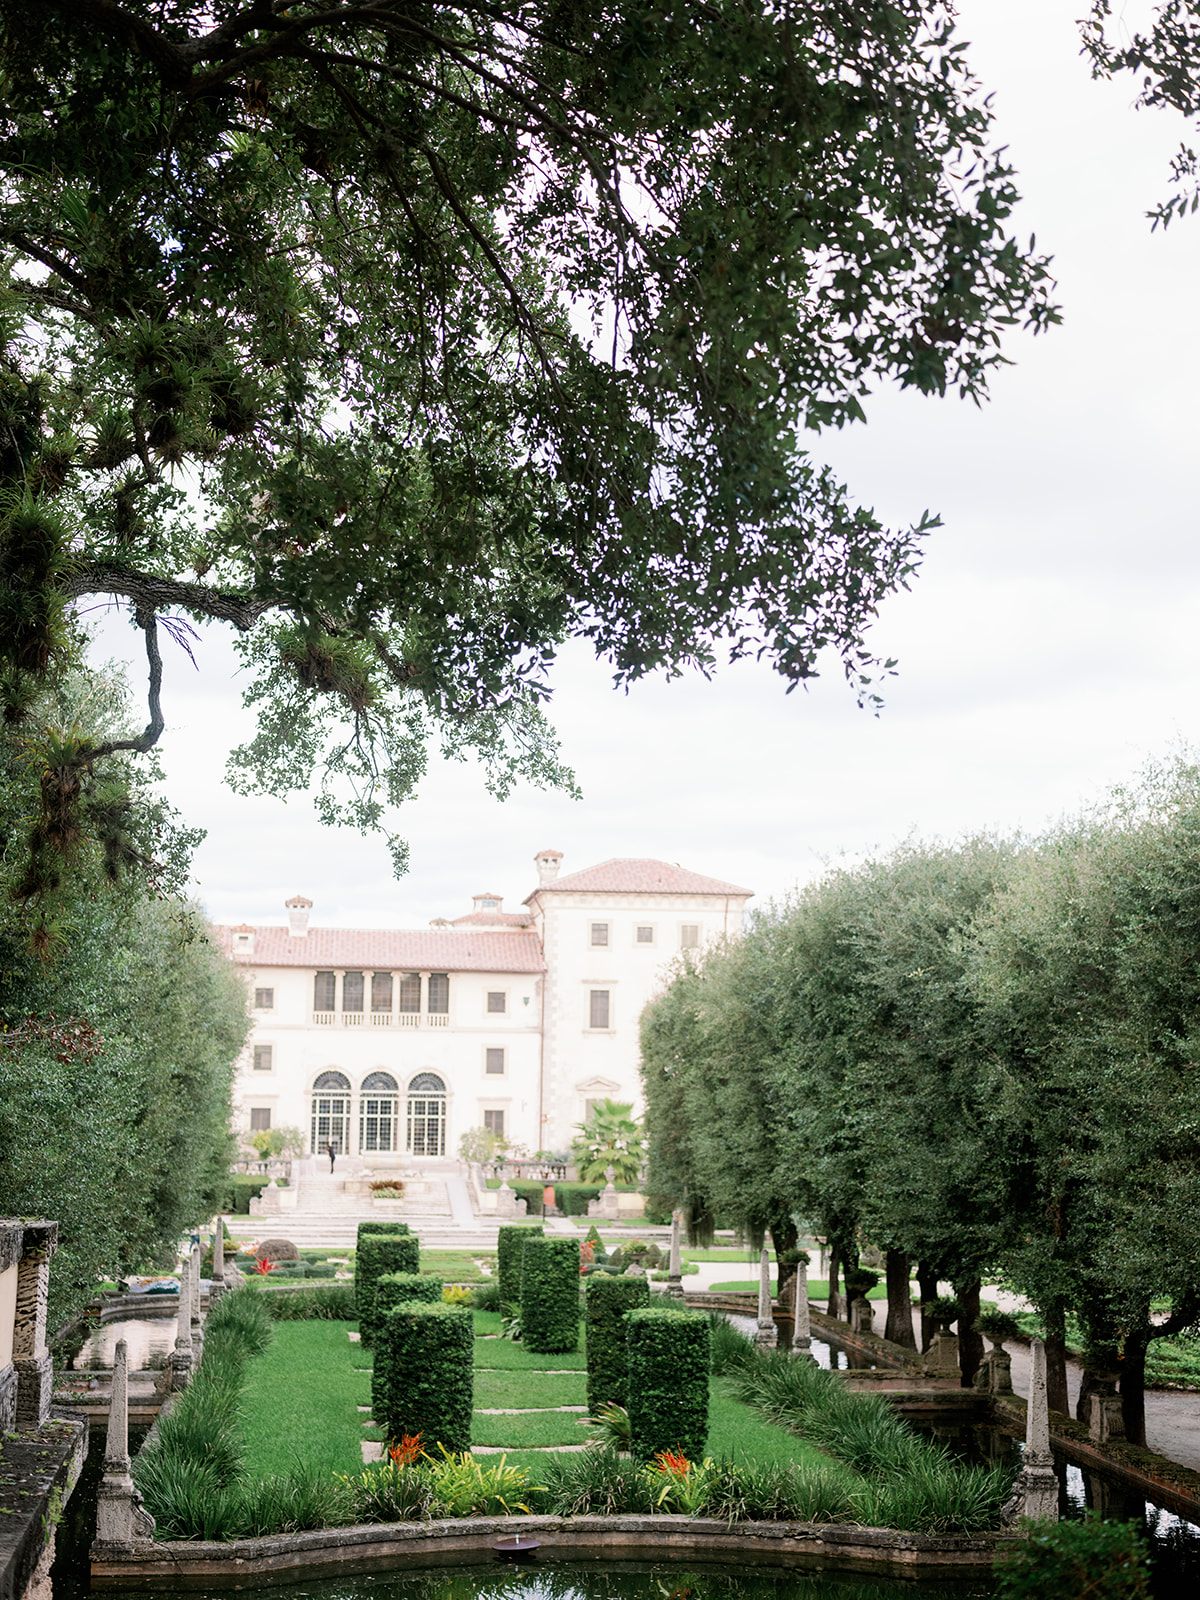 Vizcaya Museum & Gardens luxury wedding venue in Miami, Florida. 